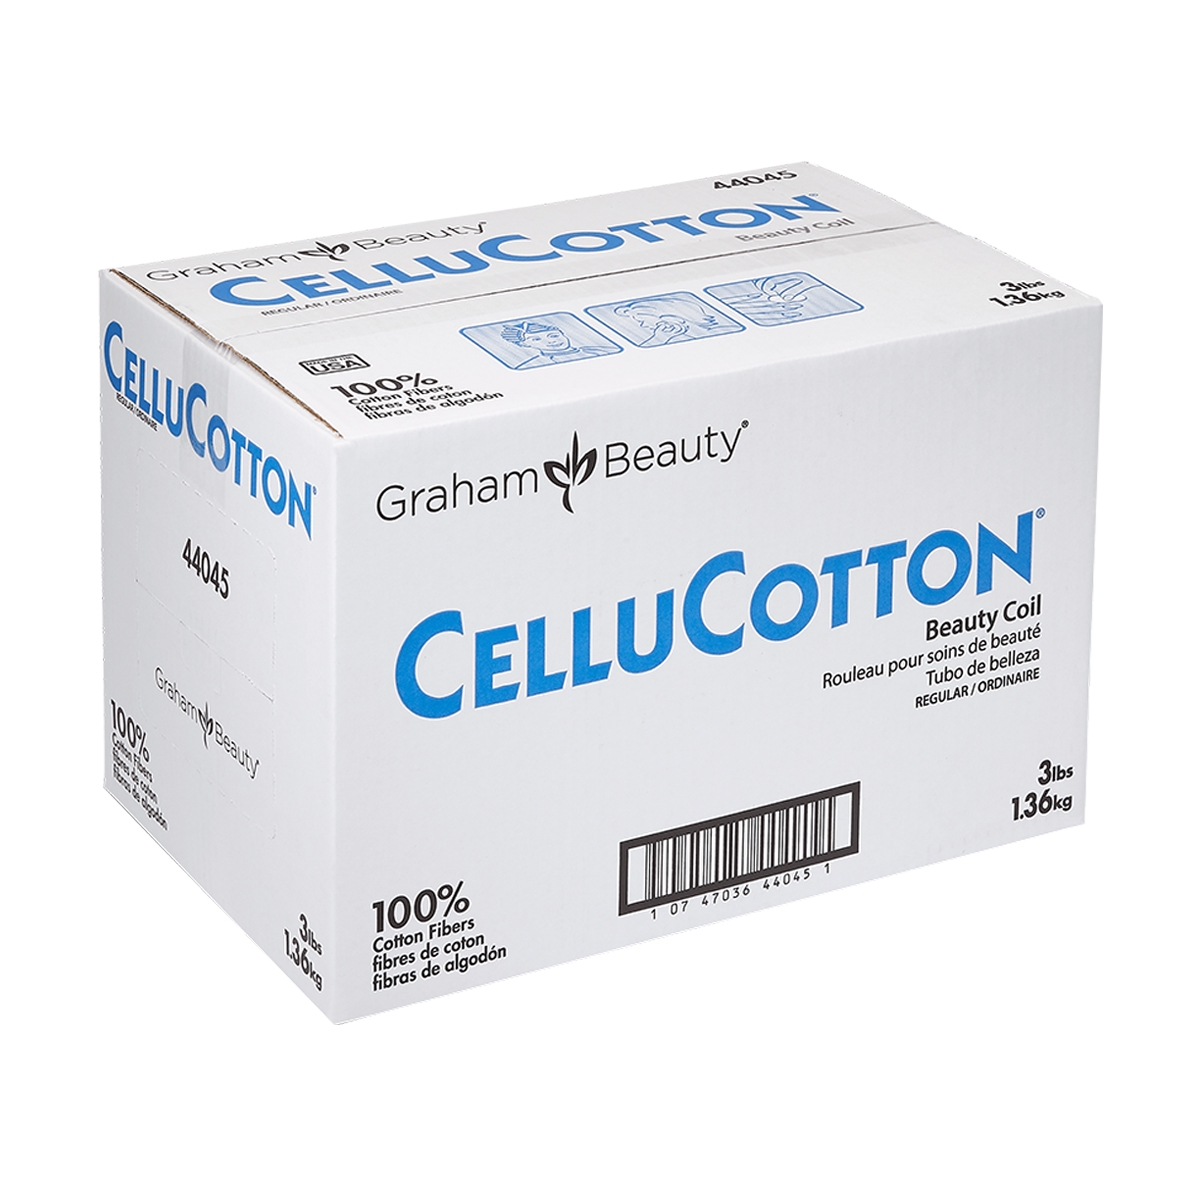 Graham Beauty CelluCotton Beauty Coil - 100% Cotton